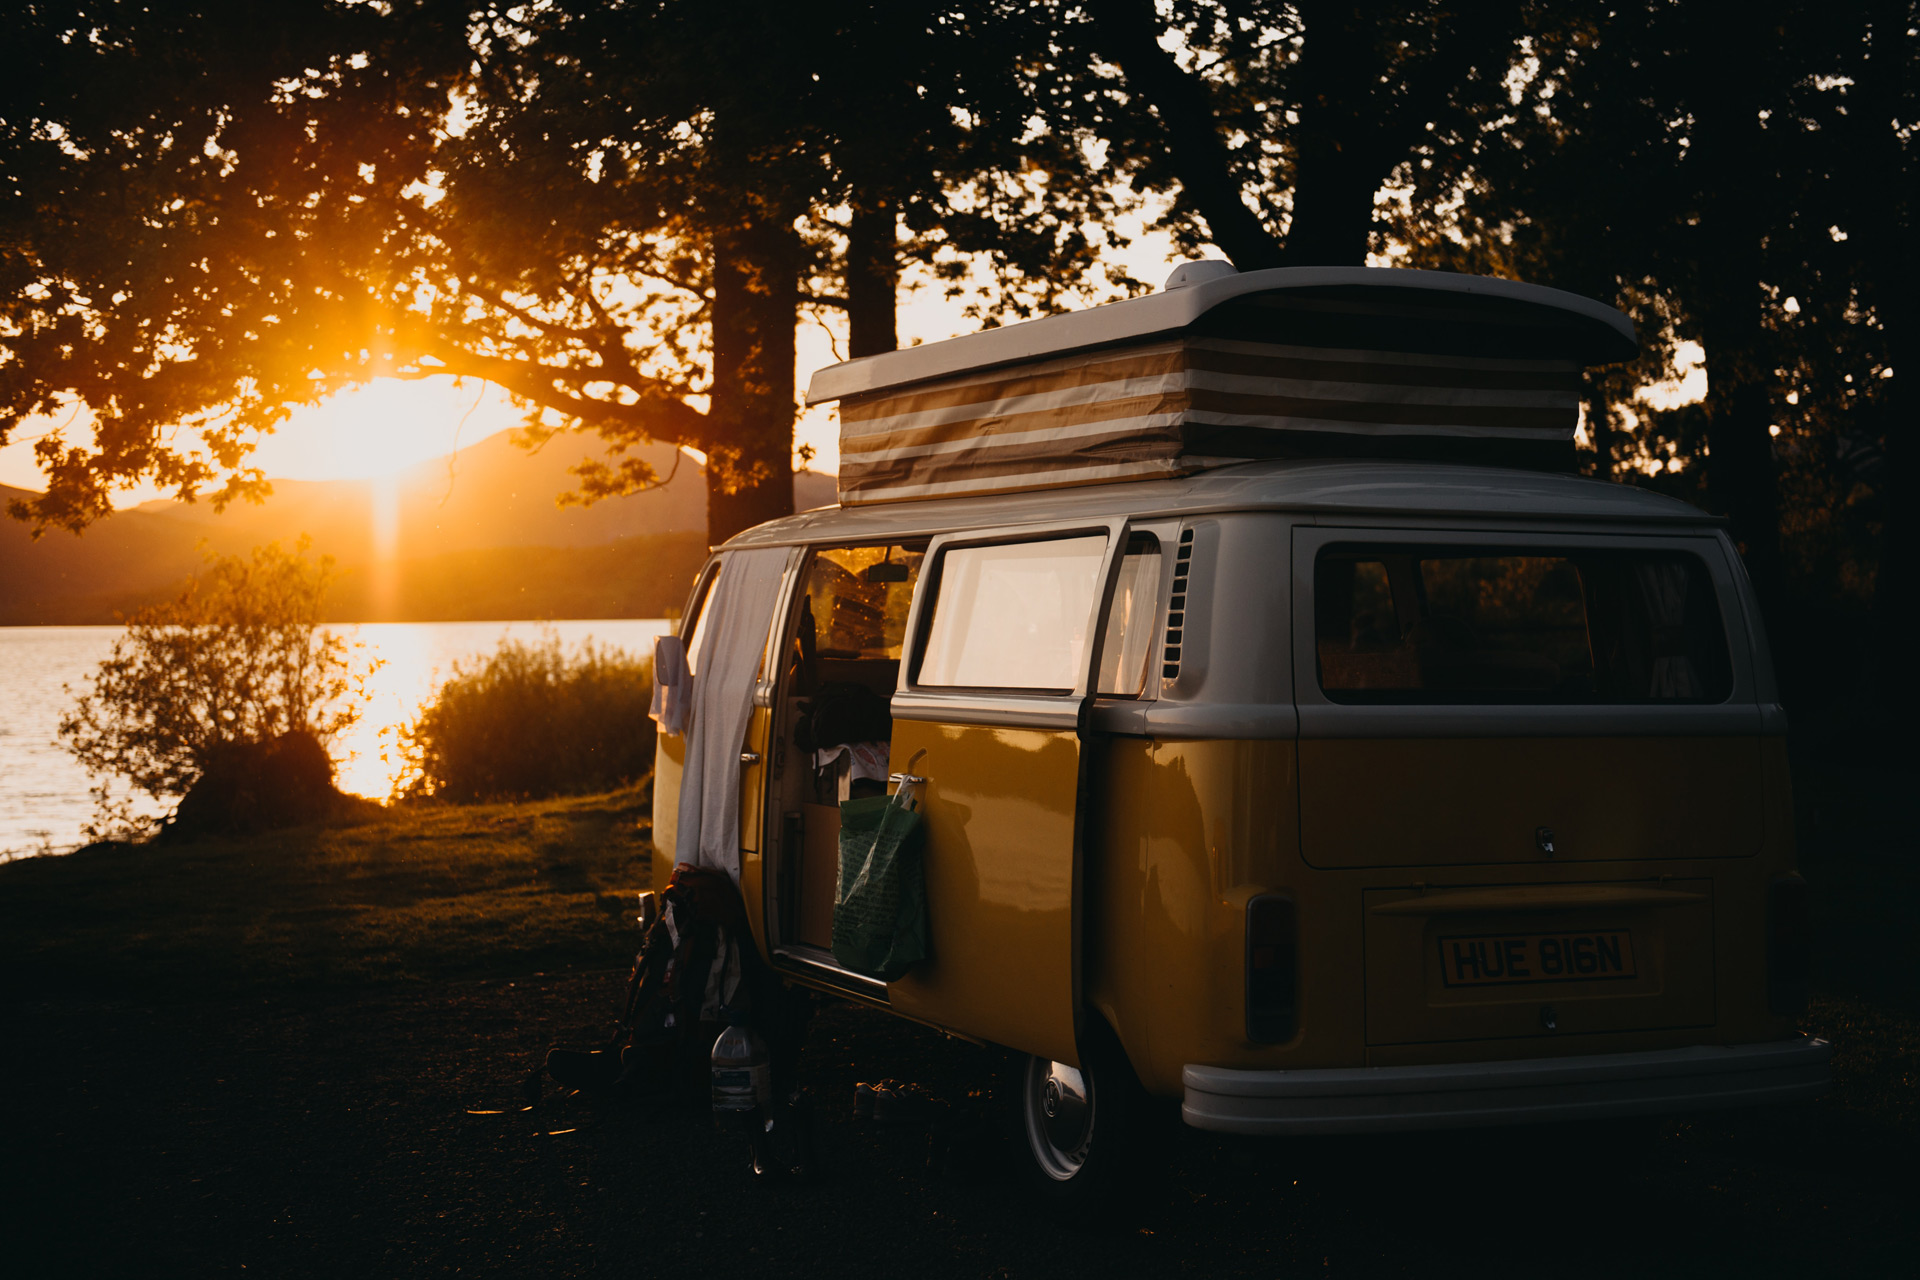 Orange VW campervan by a river at sunset